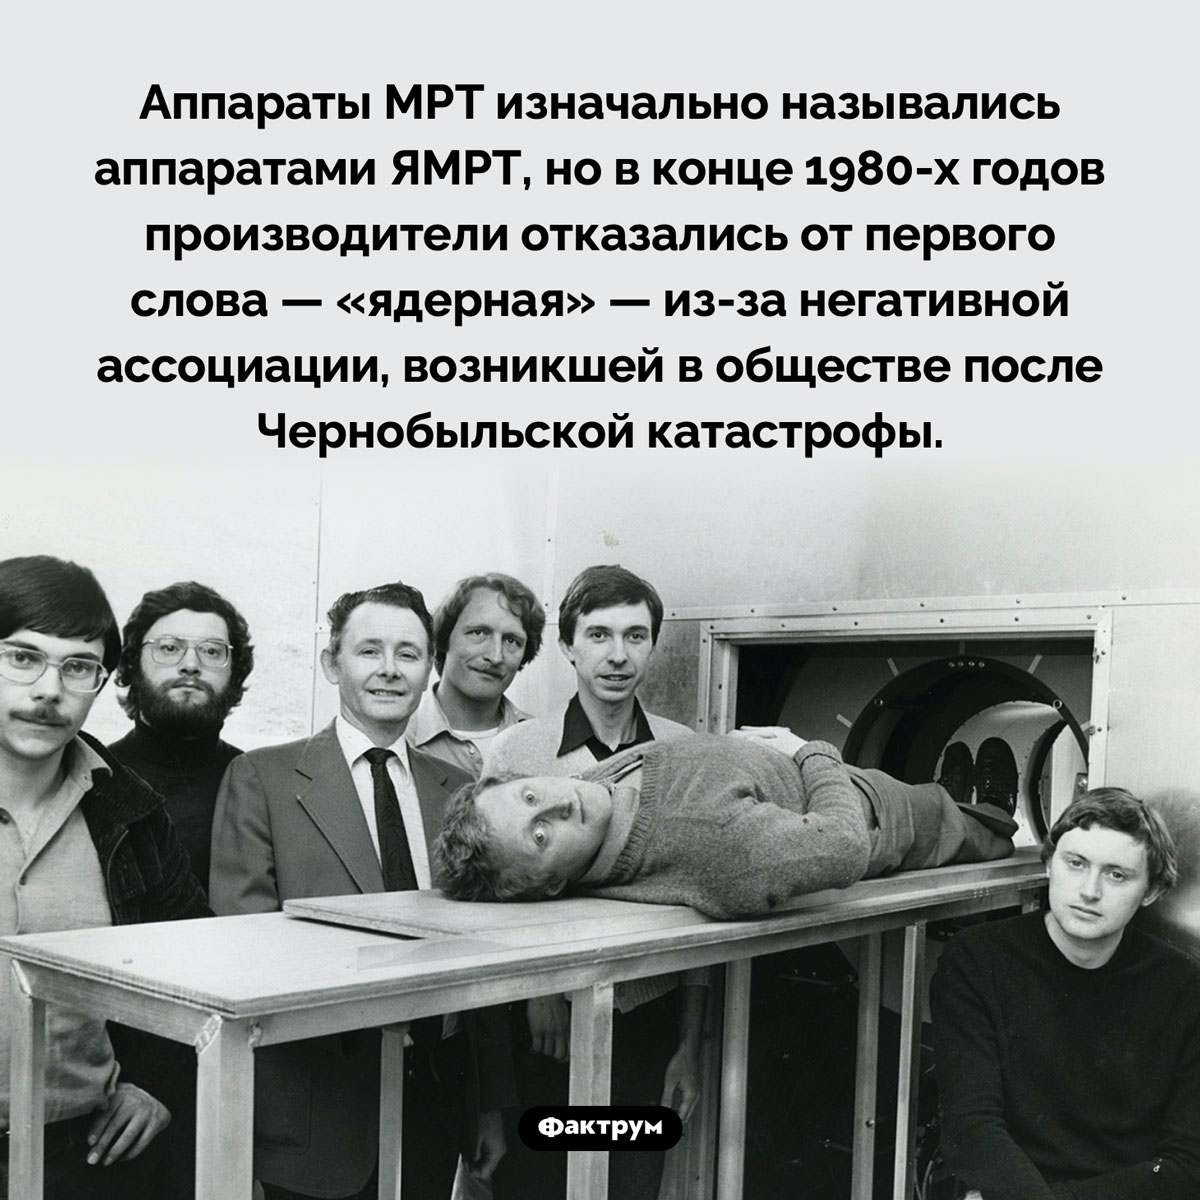 Какие аппараты называли ЯМРТ. Аппараты МРТ изначально назывались аппаратами ЯМРТ, но в конце 1980-х годов производители отказались от первого слова — «ядерная» — из-за негативной ассоциации, возникшей в обществе после Чернобыльской катастрофы.